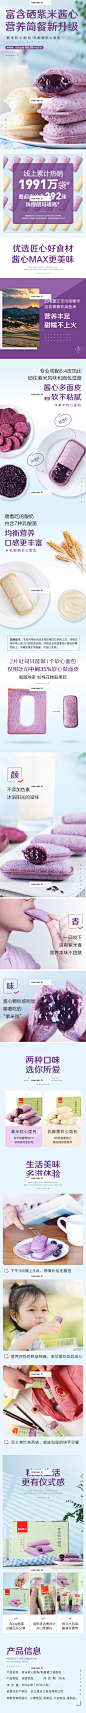 【良品铺子-紫米面包整箱800g】早餐食品乳酸菌小口袋蛋糕零食-tmall.com天猫